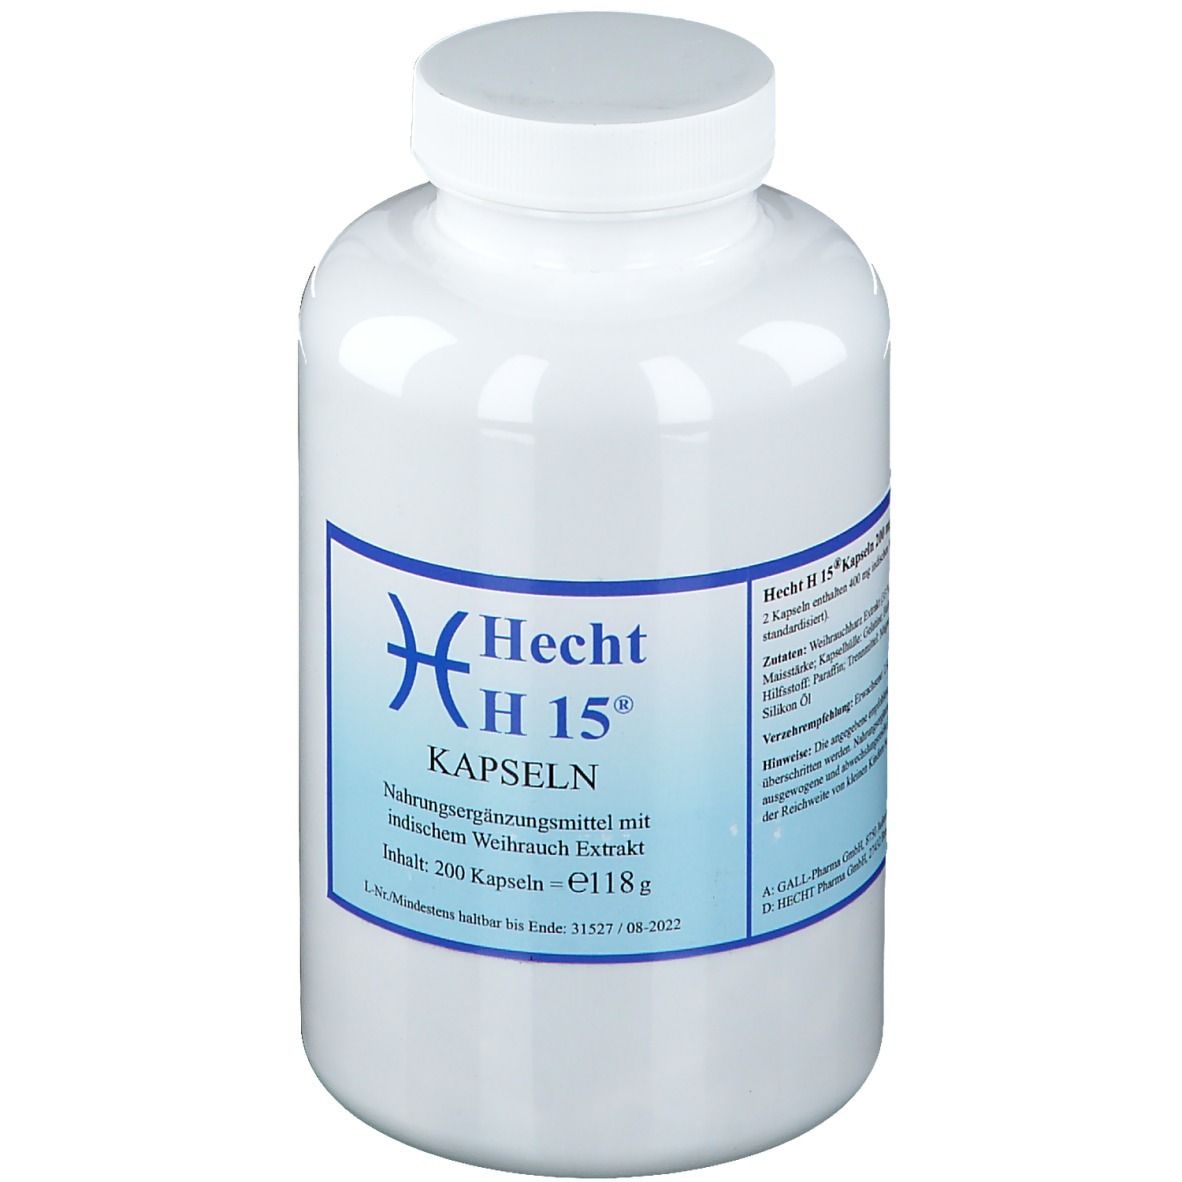 Hecht H15® 200 mg Kapseln